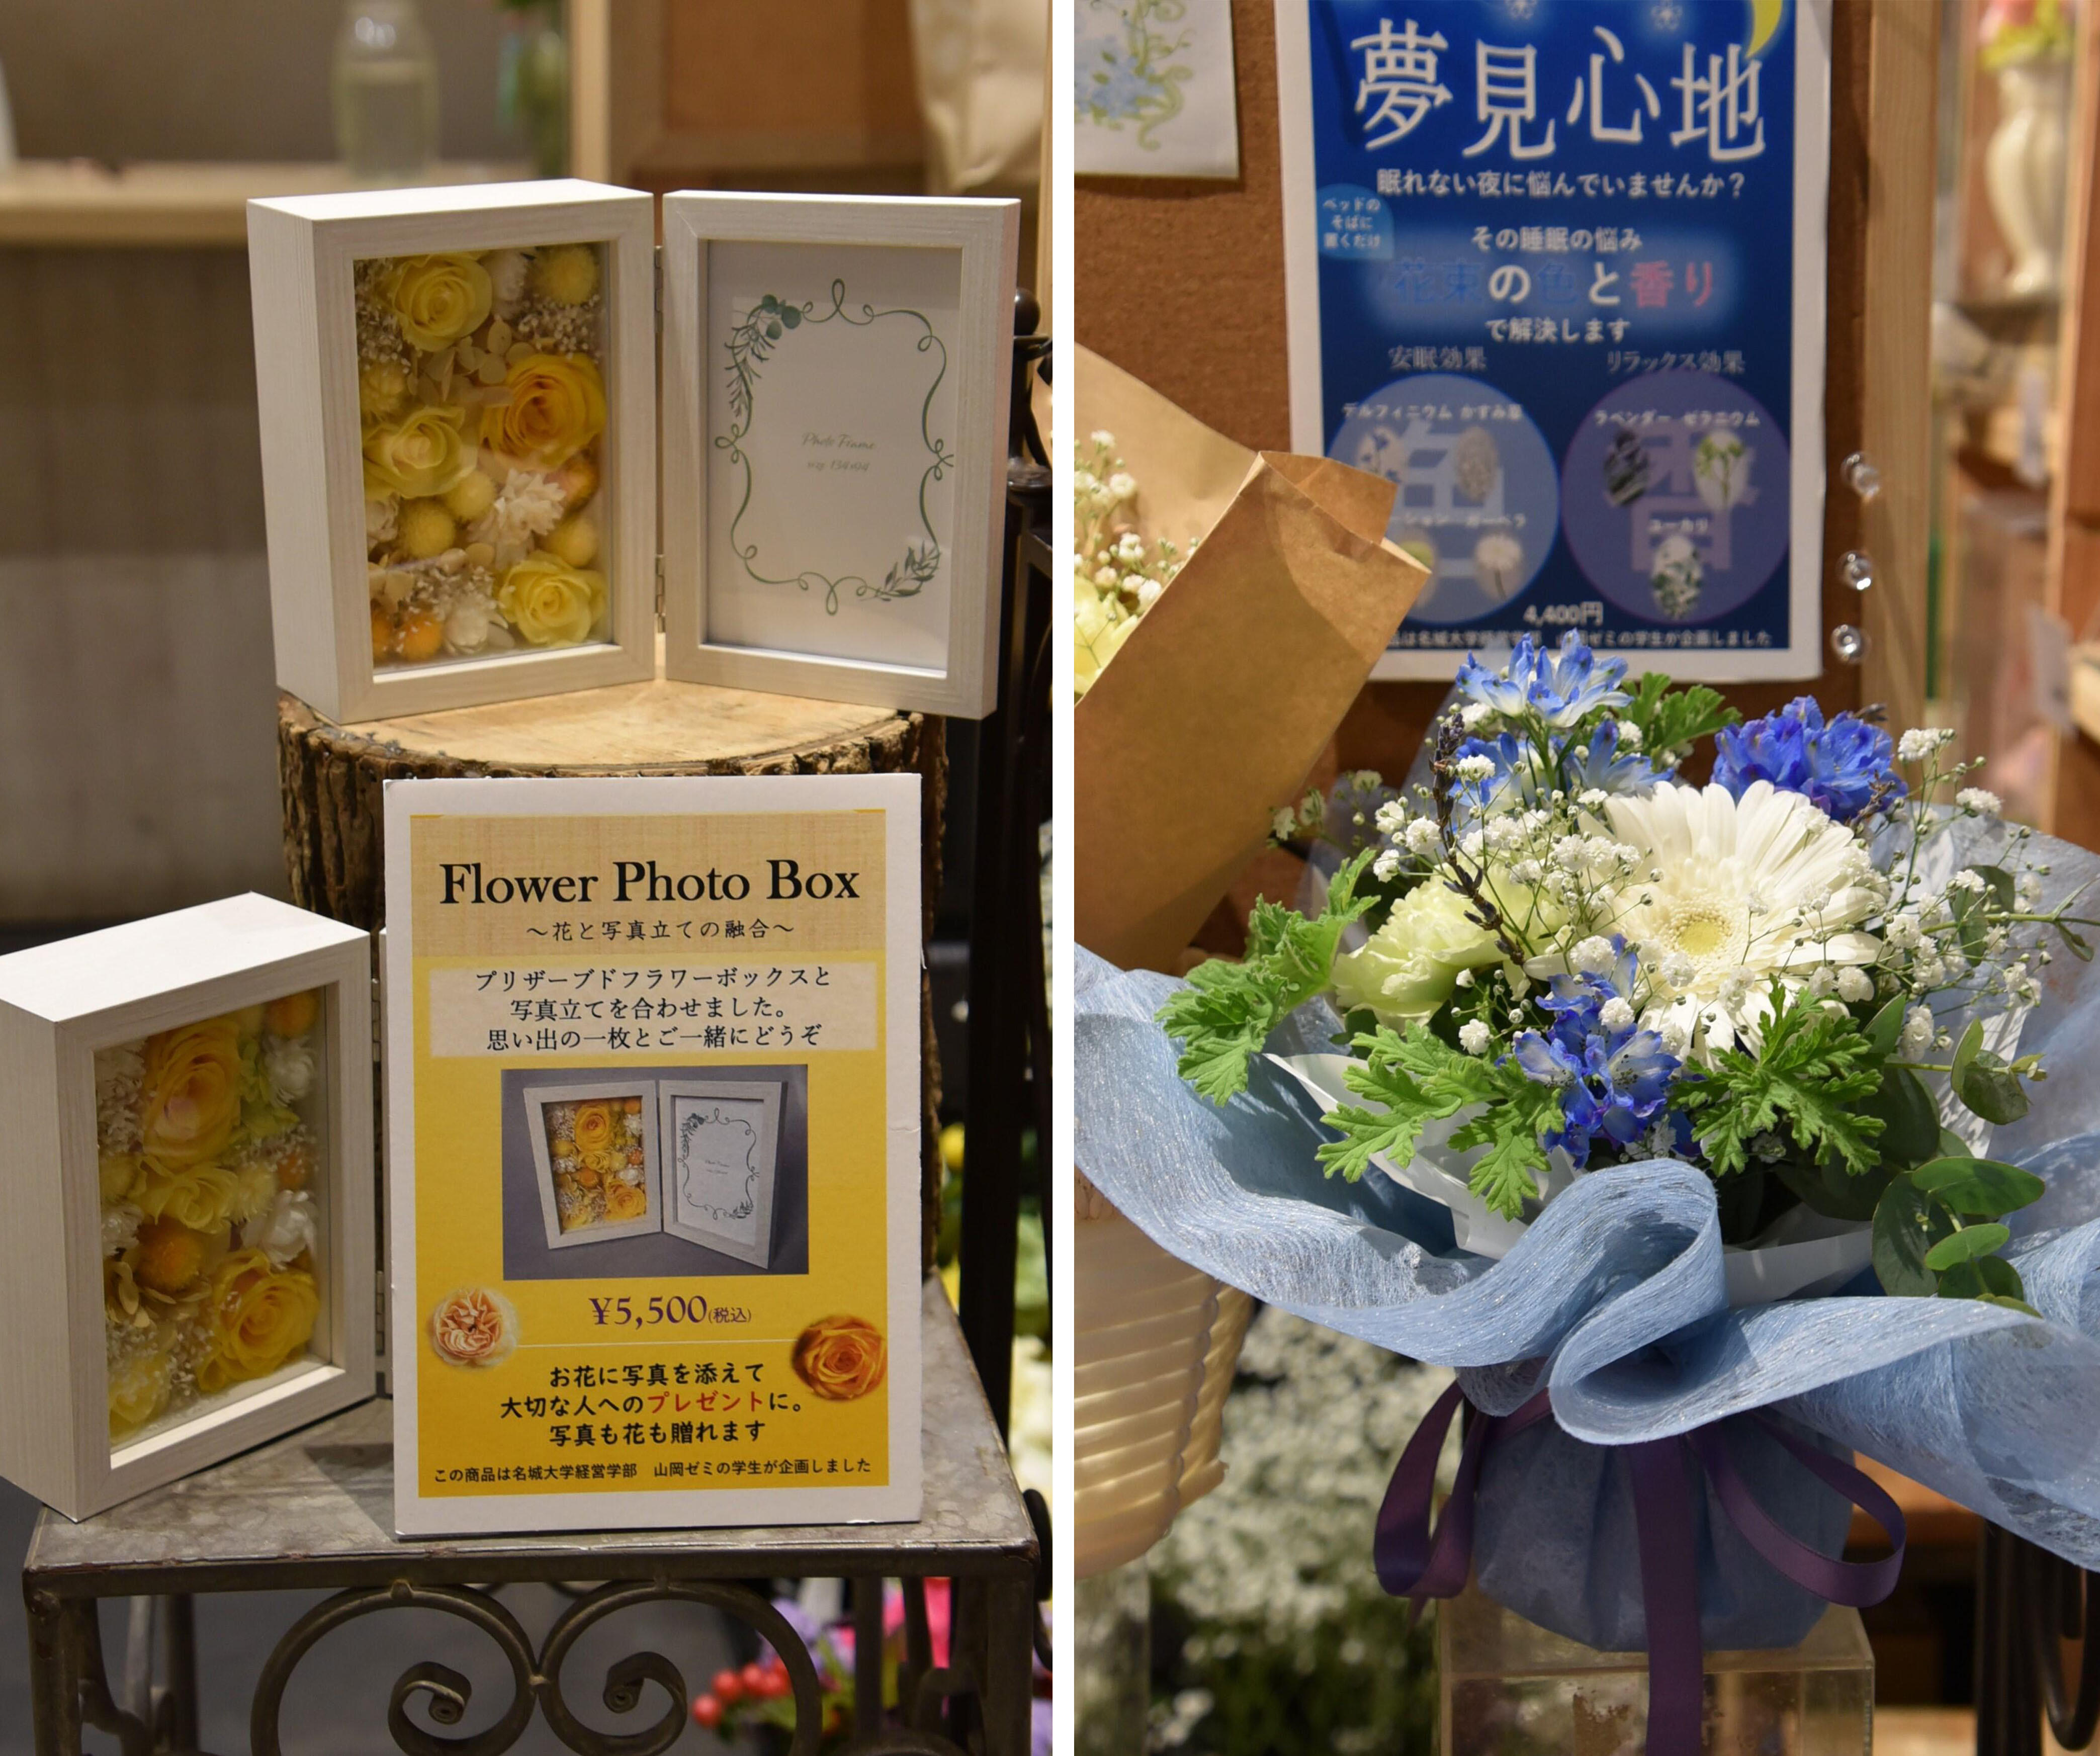 （左）新商品「Flower Photo Box」、（右）新商品「夢見心地」